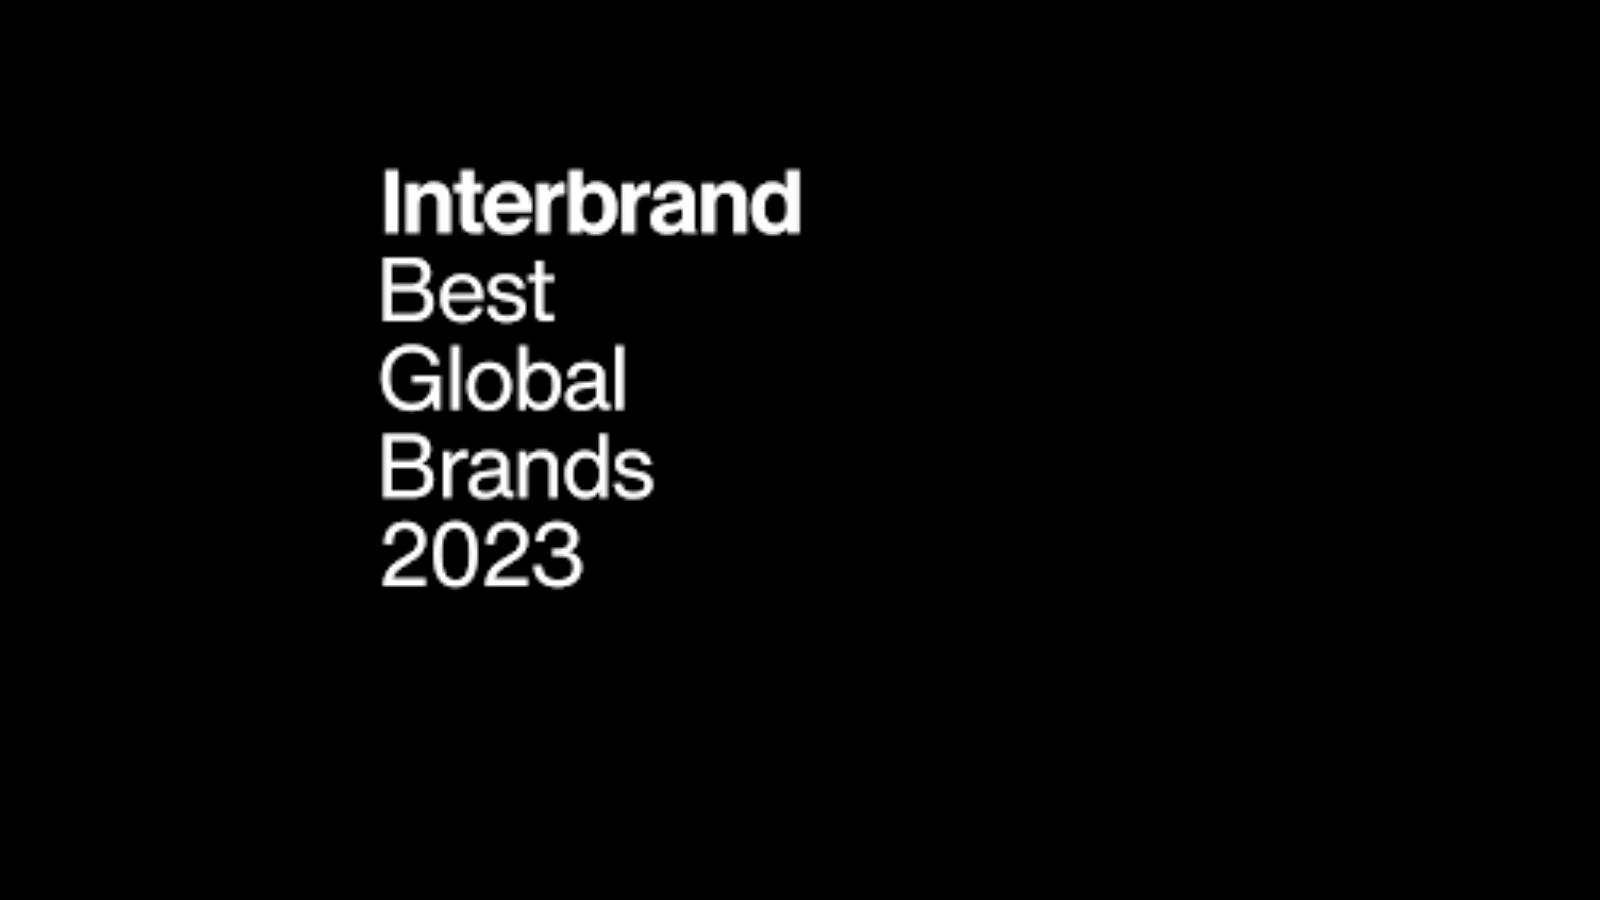 Interbrand şirketi, hazırladığı ”Best Global Brands 2023” çalışmasını duyurdu